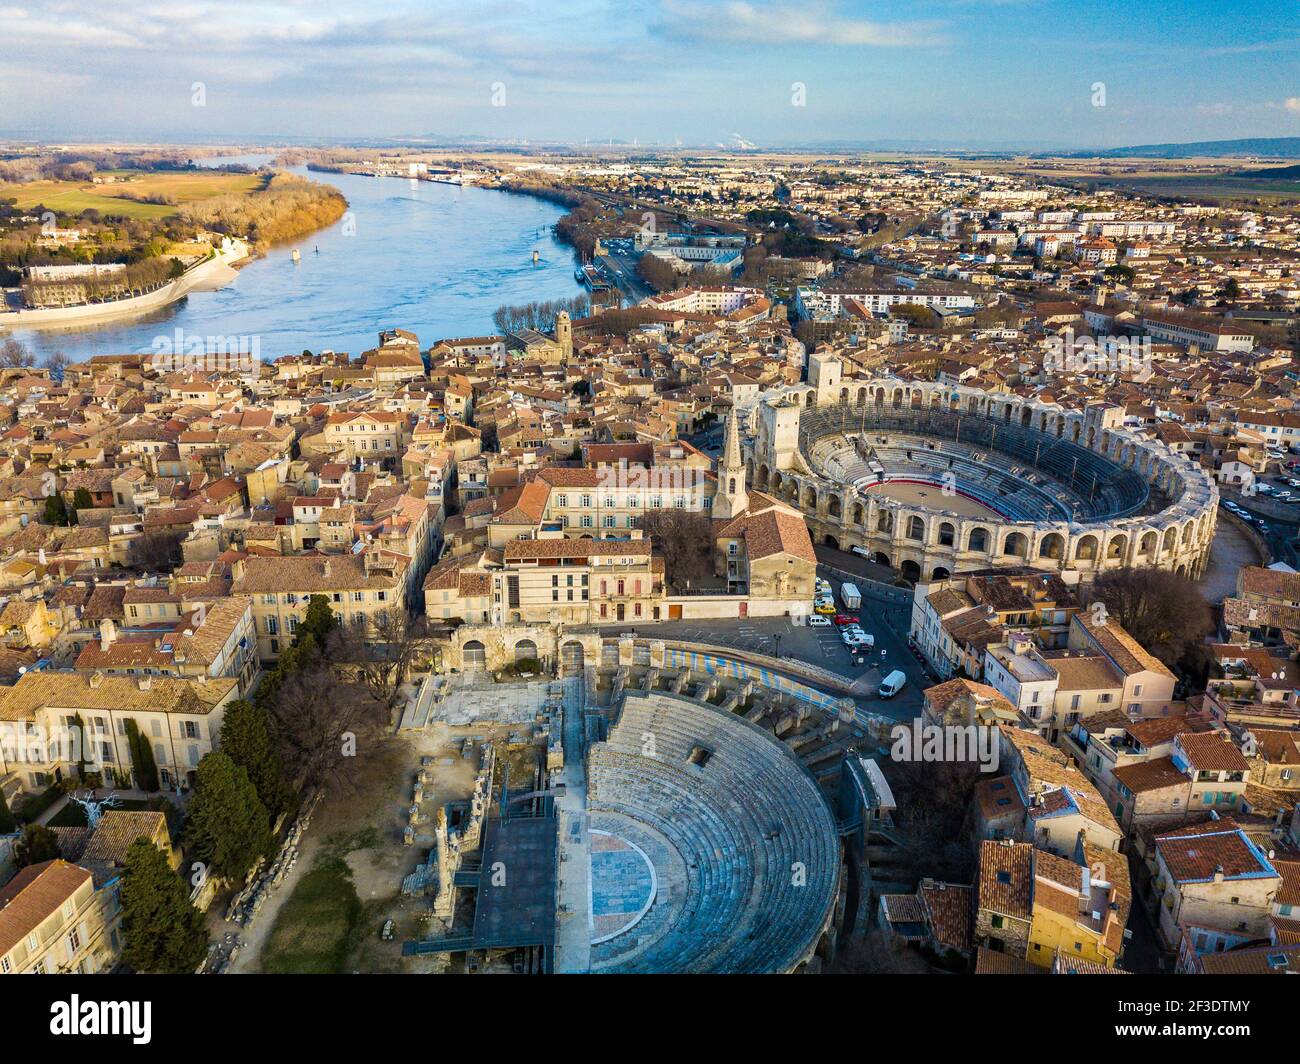 Mattina vista aerea sulla città storica di Arles, Francia. Vista panoramica sulla città con storia antica, parte del sito patrimonio dell'umanità dell'UNESCO. Foto Stock